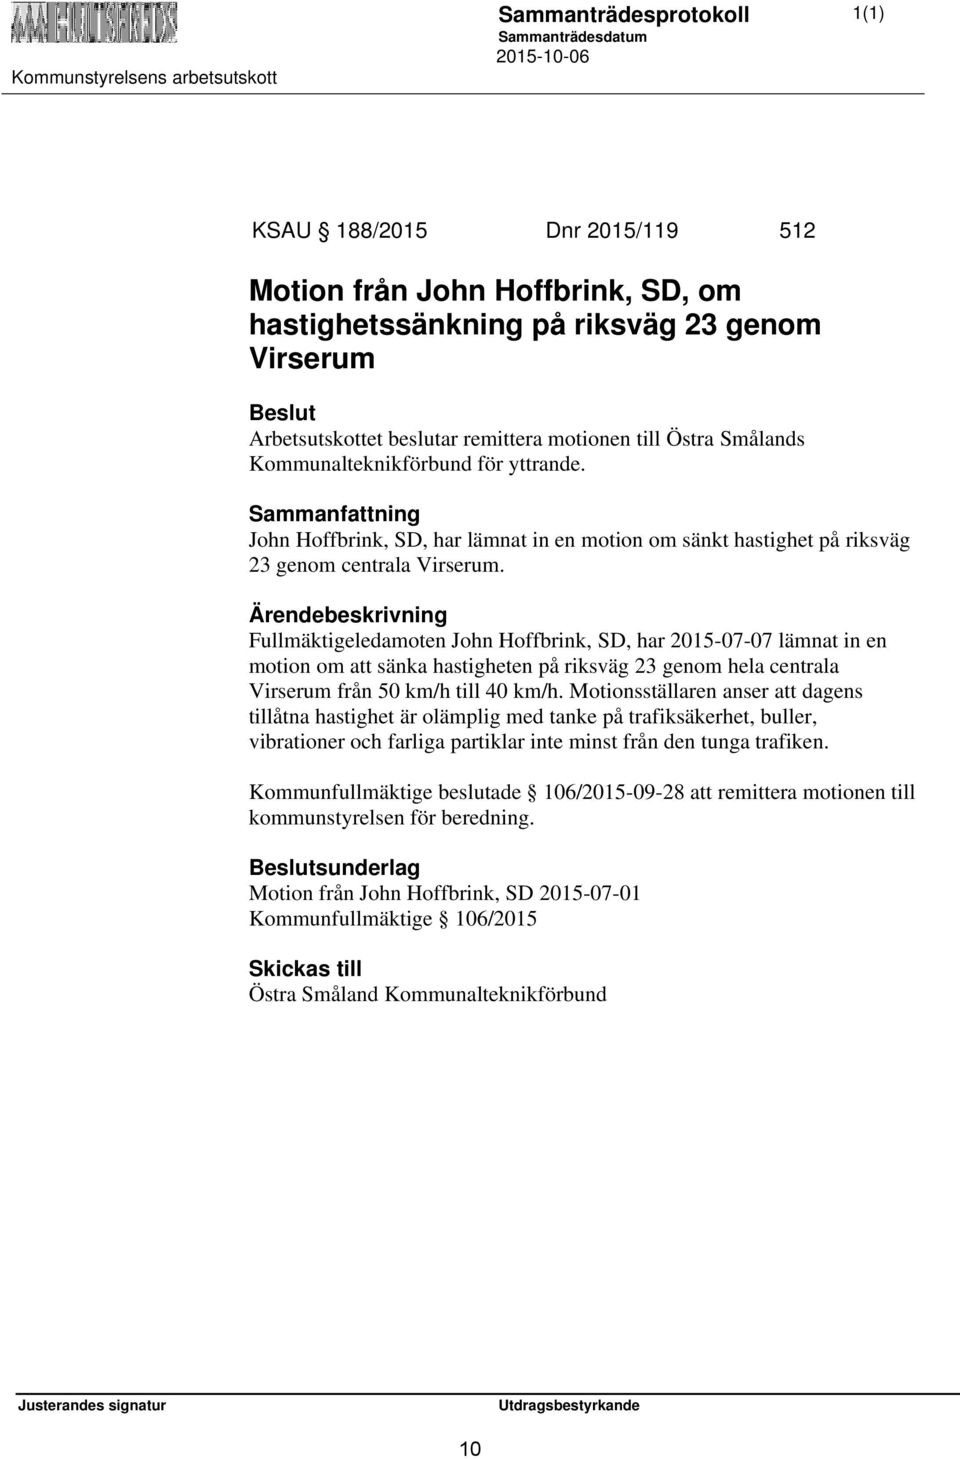 Fullmäktigeledamoten John Hoffbrink, SD, har 2015-07-07 lämnat in en motion om att sänka hastigheten på riksväg 23 genom hela centrala Virserum från 50 km/h till 40 km/h.